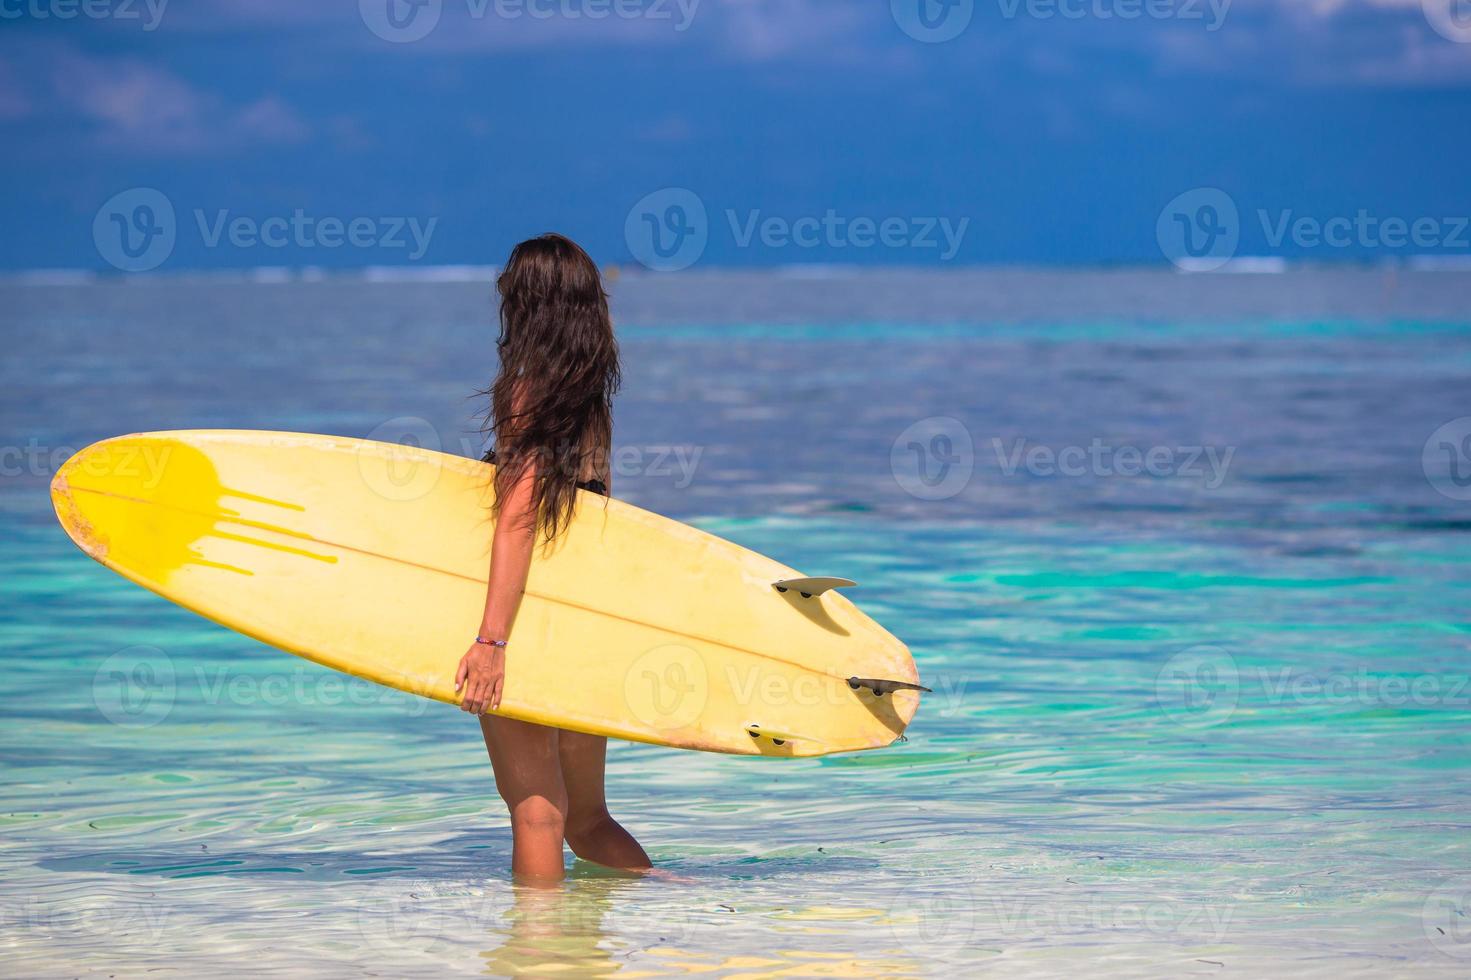 Belle surfeuse surfant pendant les vacances d'été photo